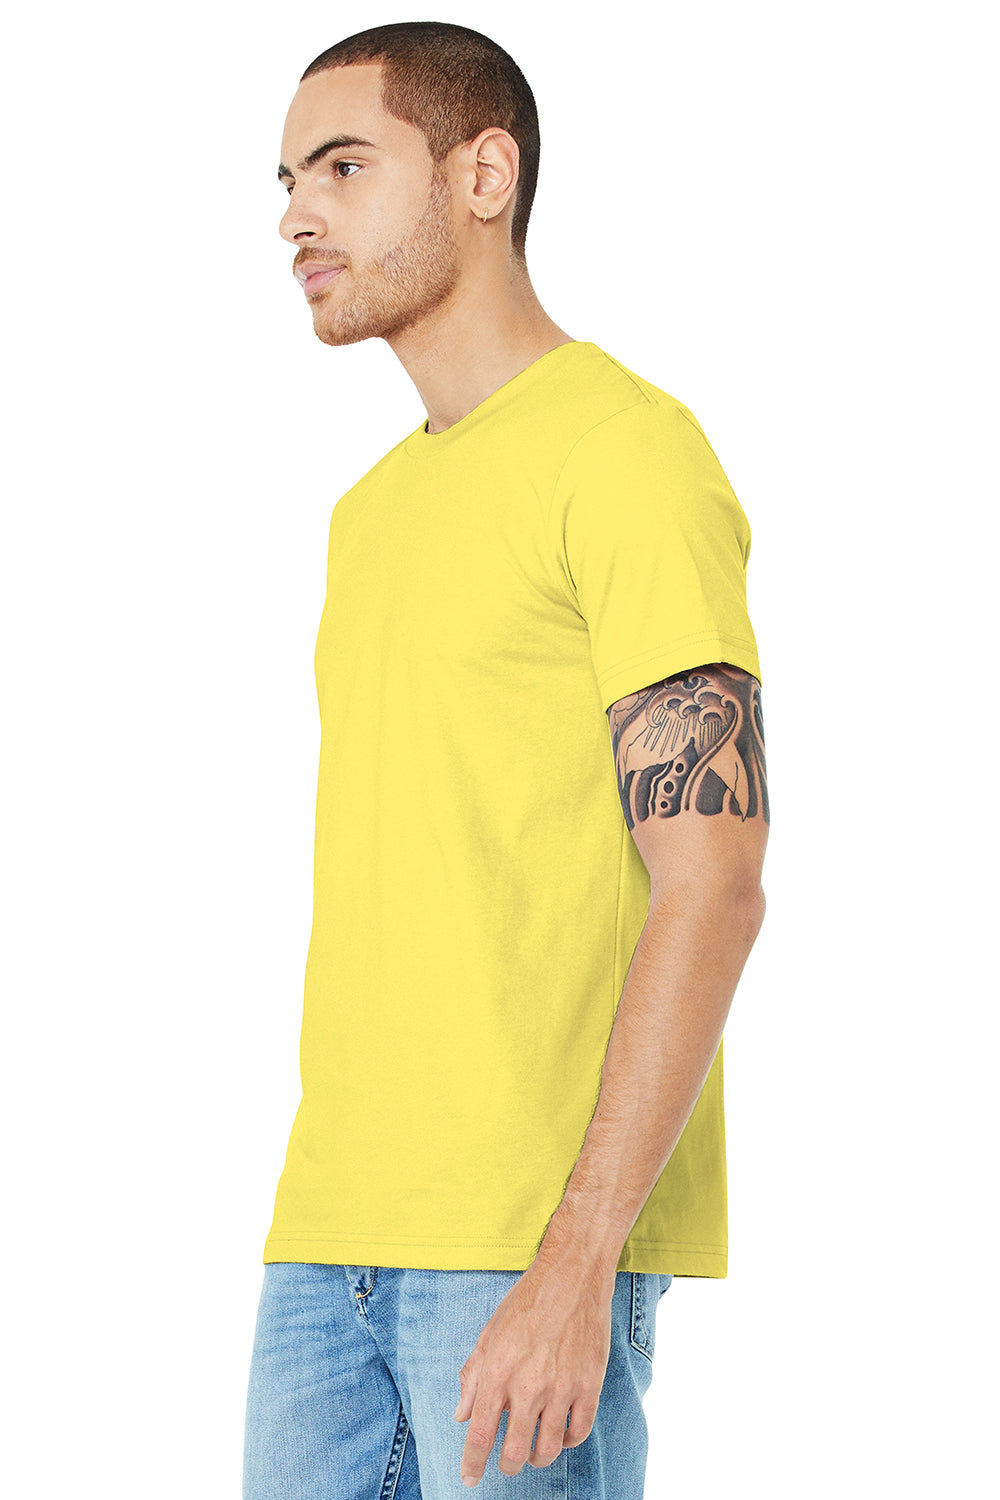 Bella + Canvas BC3001/3001C Mens Jersey Short Sleeve Crewneck T-Shirt Yellow Model 3Q